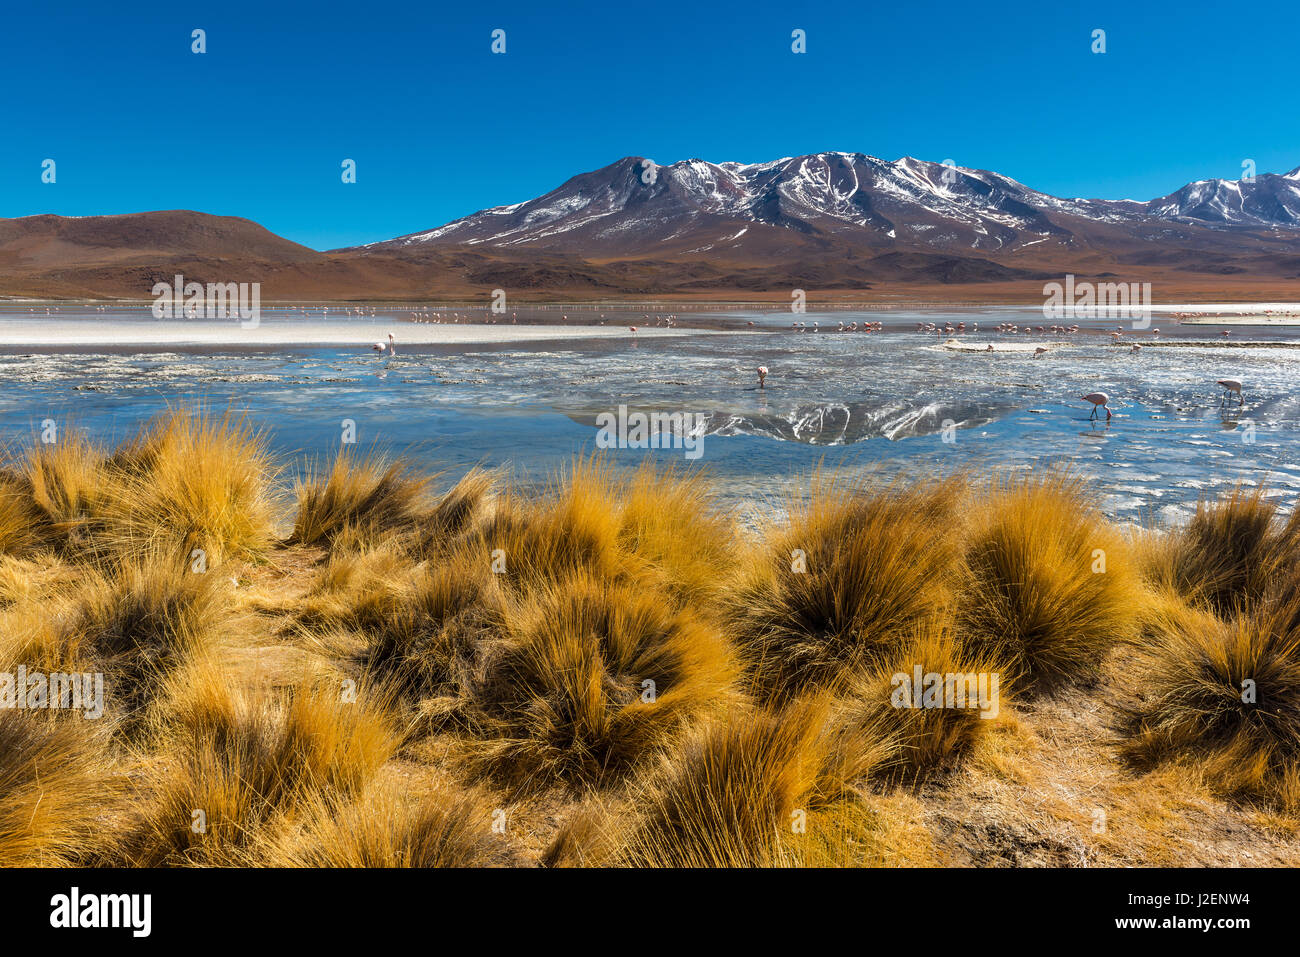 L'herbe des Andes et d'un lac de haute altitude des Andes chiliennes et avec des flamants roses dans la cordillère des Andes de la Bolivie dans la région de l'Uyuni salt flat. Banque D'Images